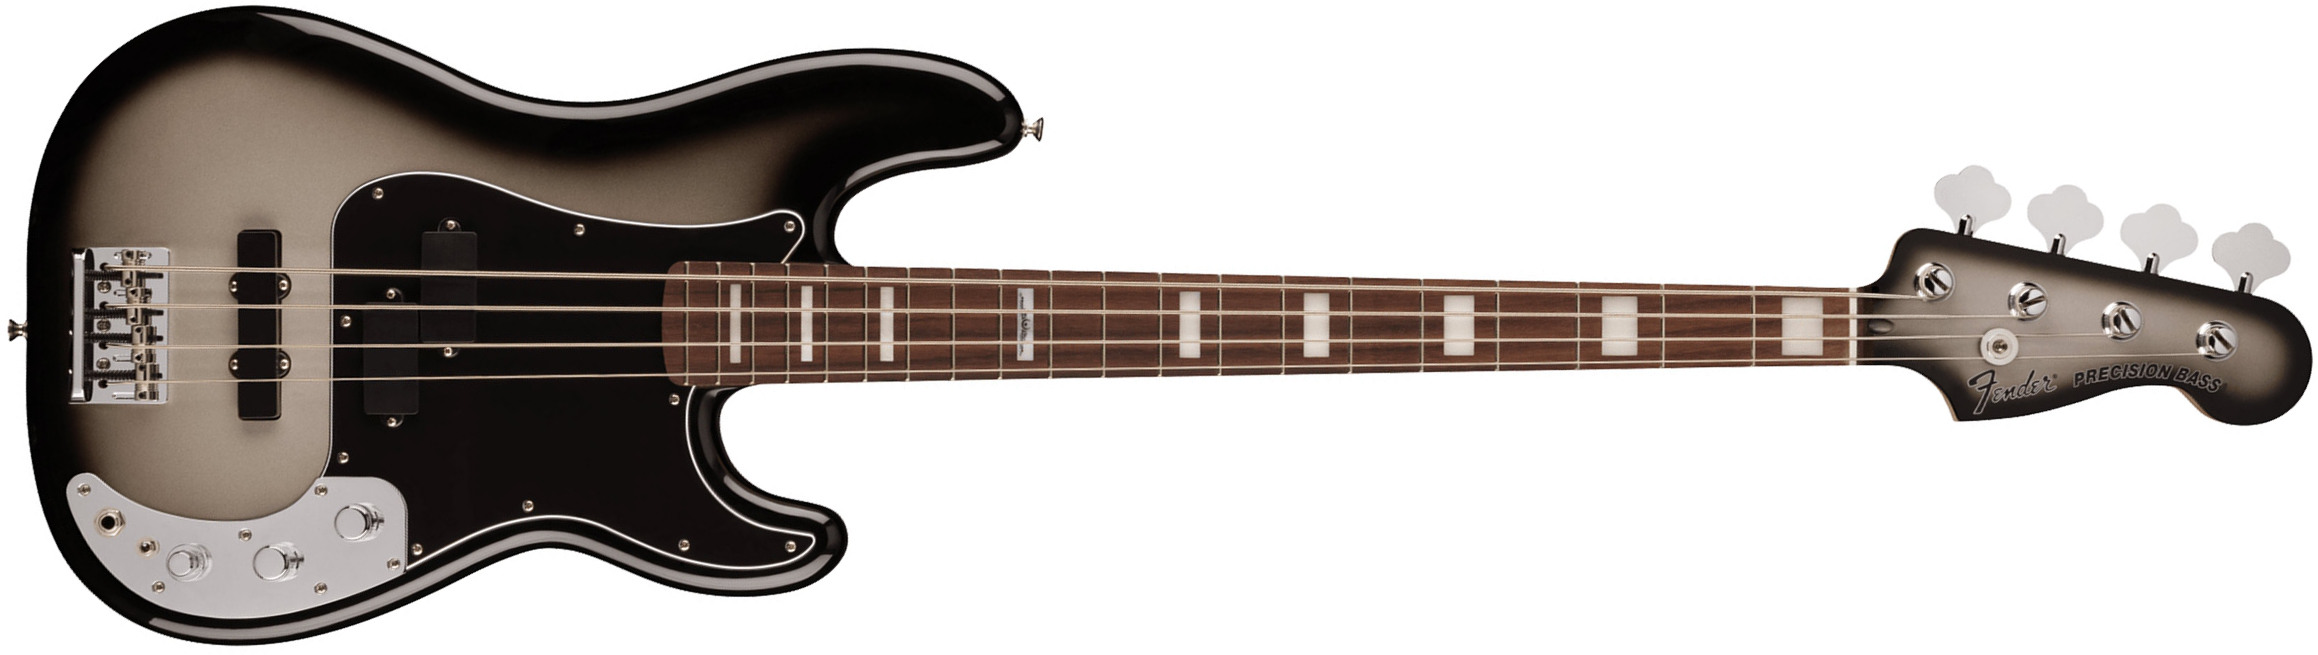 Fender Troy Sanders Precision Bass Signature Active Rw - Silverburst - Bajo eléctrico de cuerpo sólido - Main picture